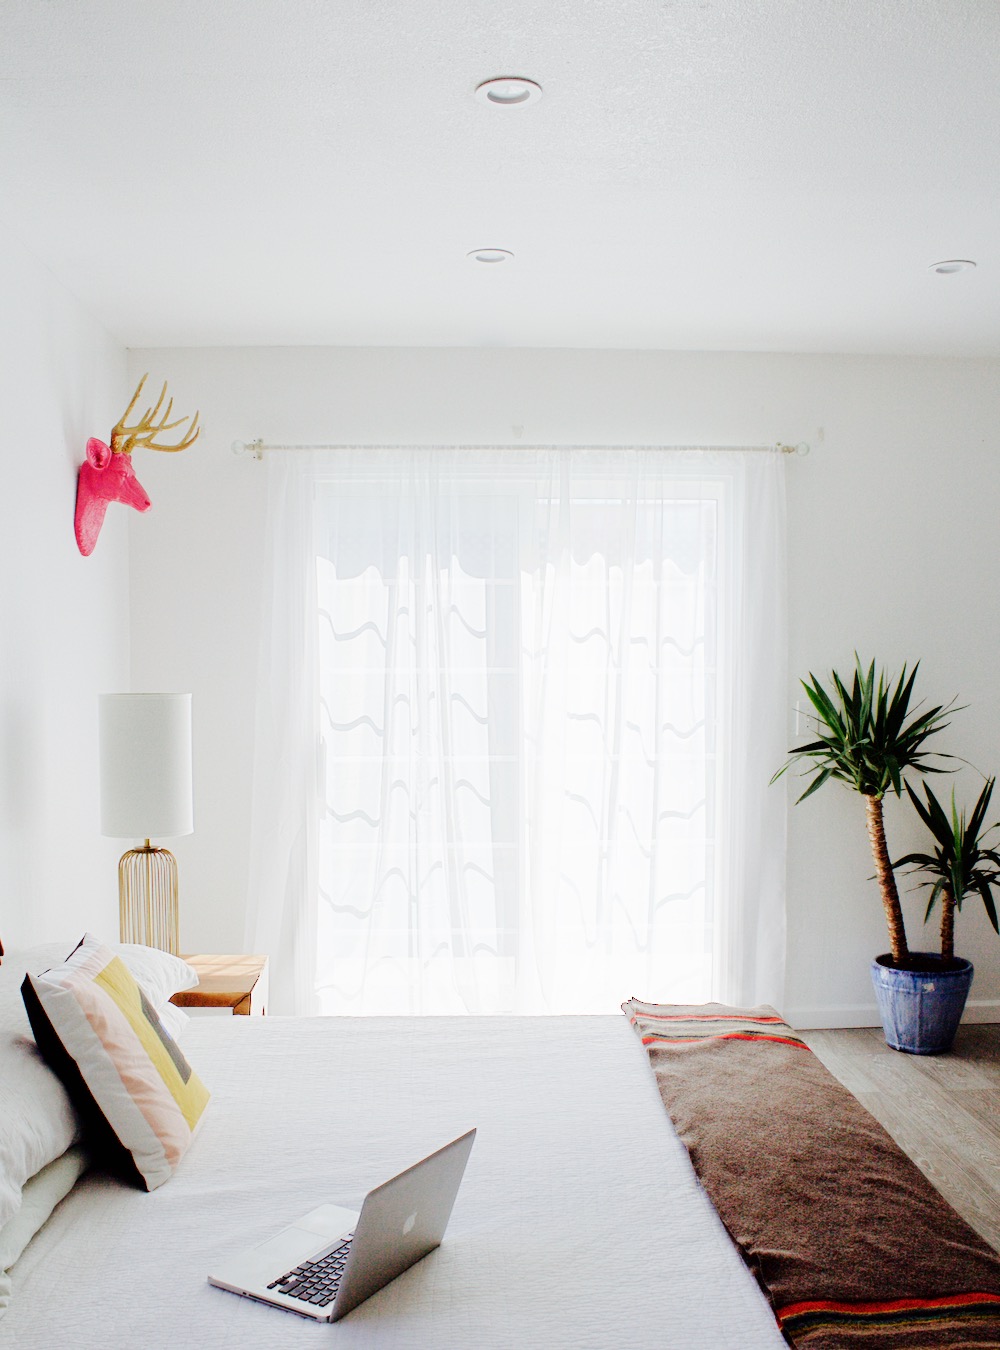 Jordan Reid's white, bright bedroom